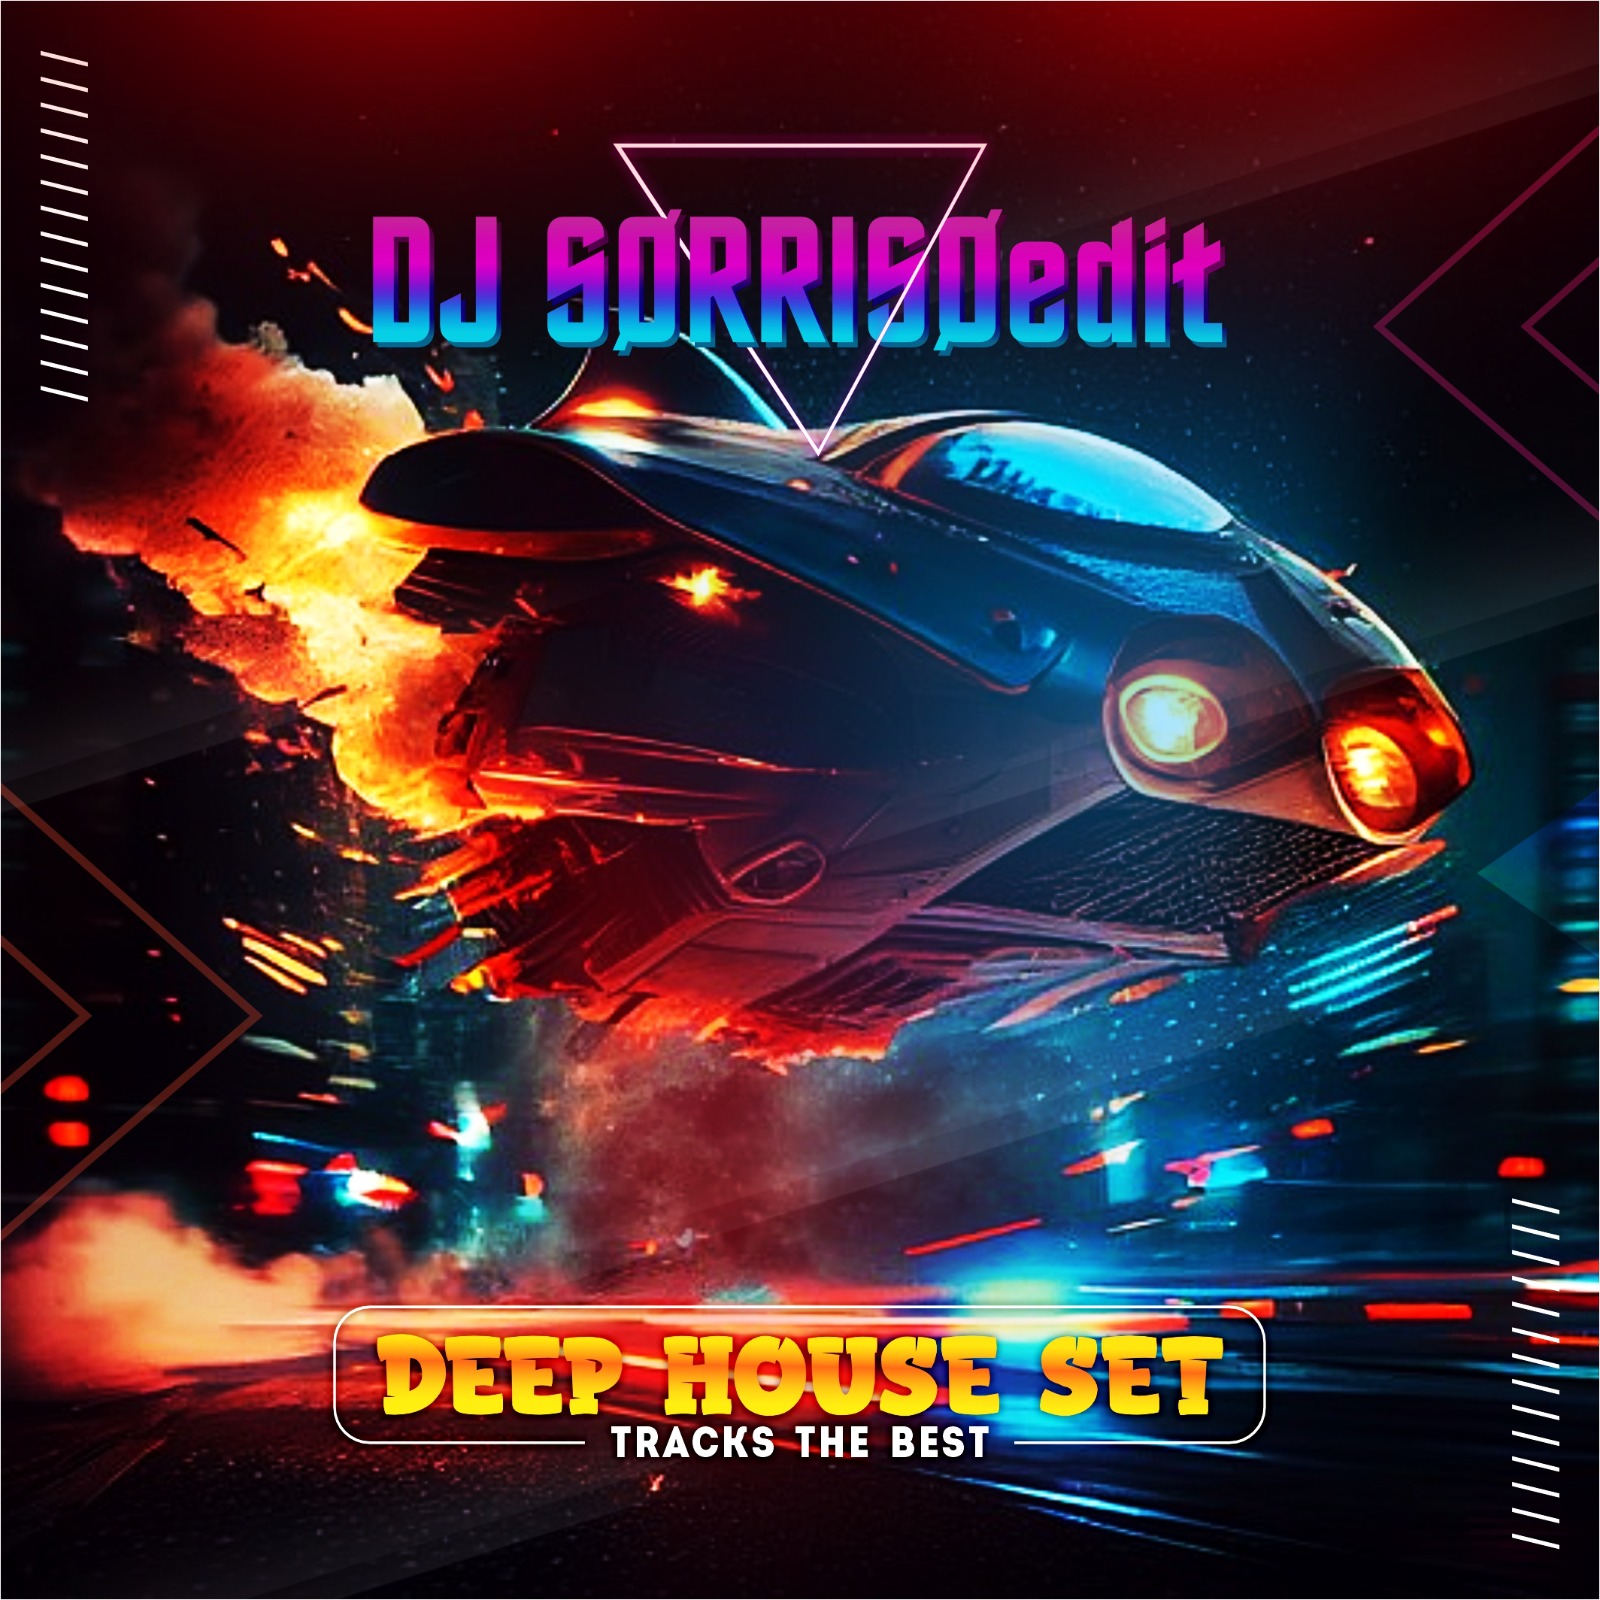 DJ SØRRISØedit DEEP HOUSE SET  tracks the best